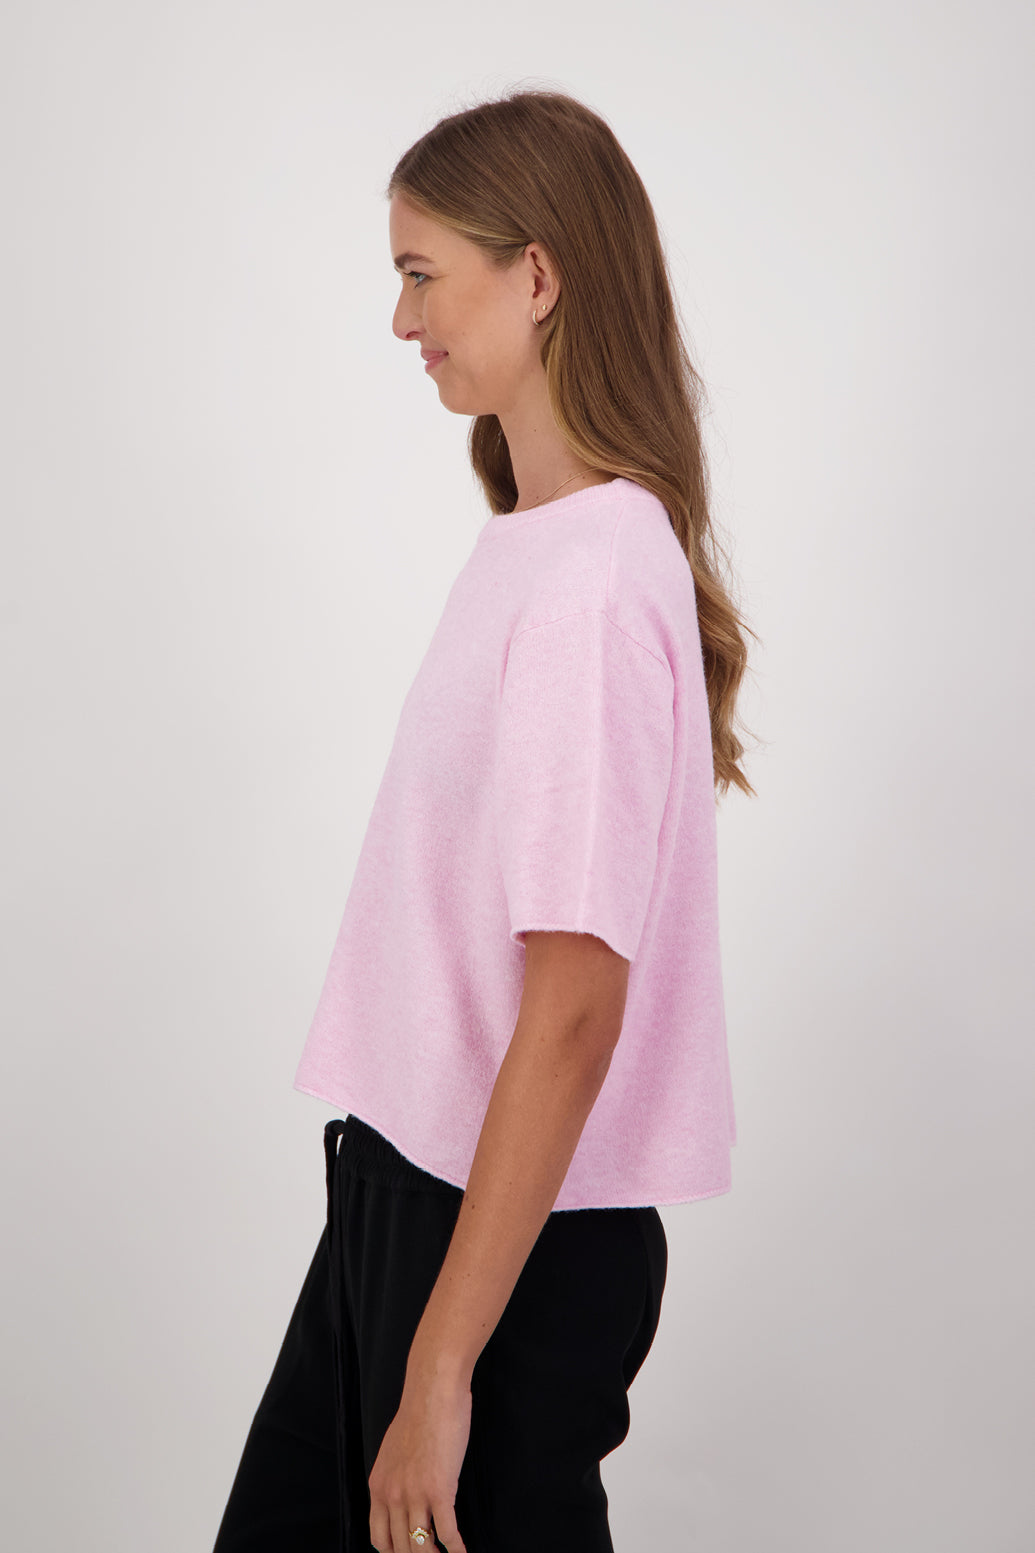 Dapper Wool Blend Short Sleeve Top/T-Shirt - Pale Pink